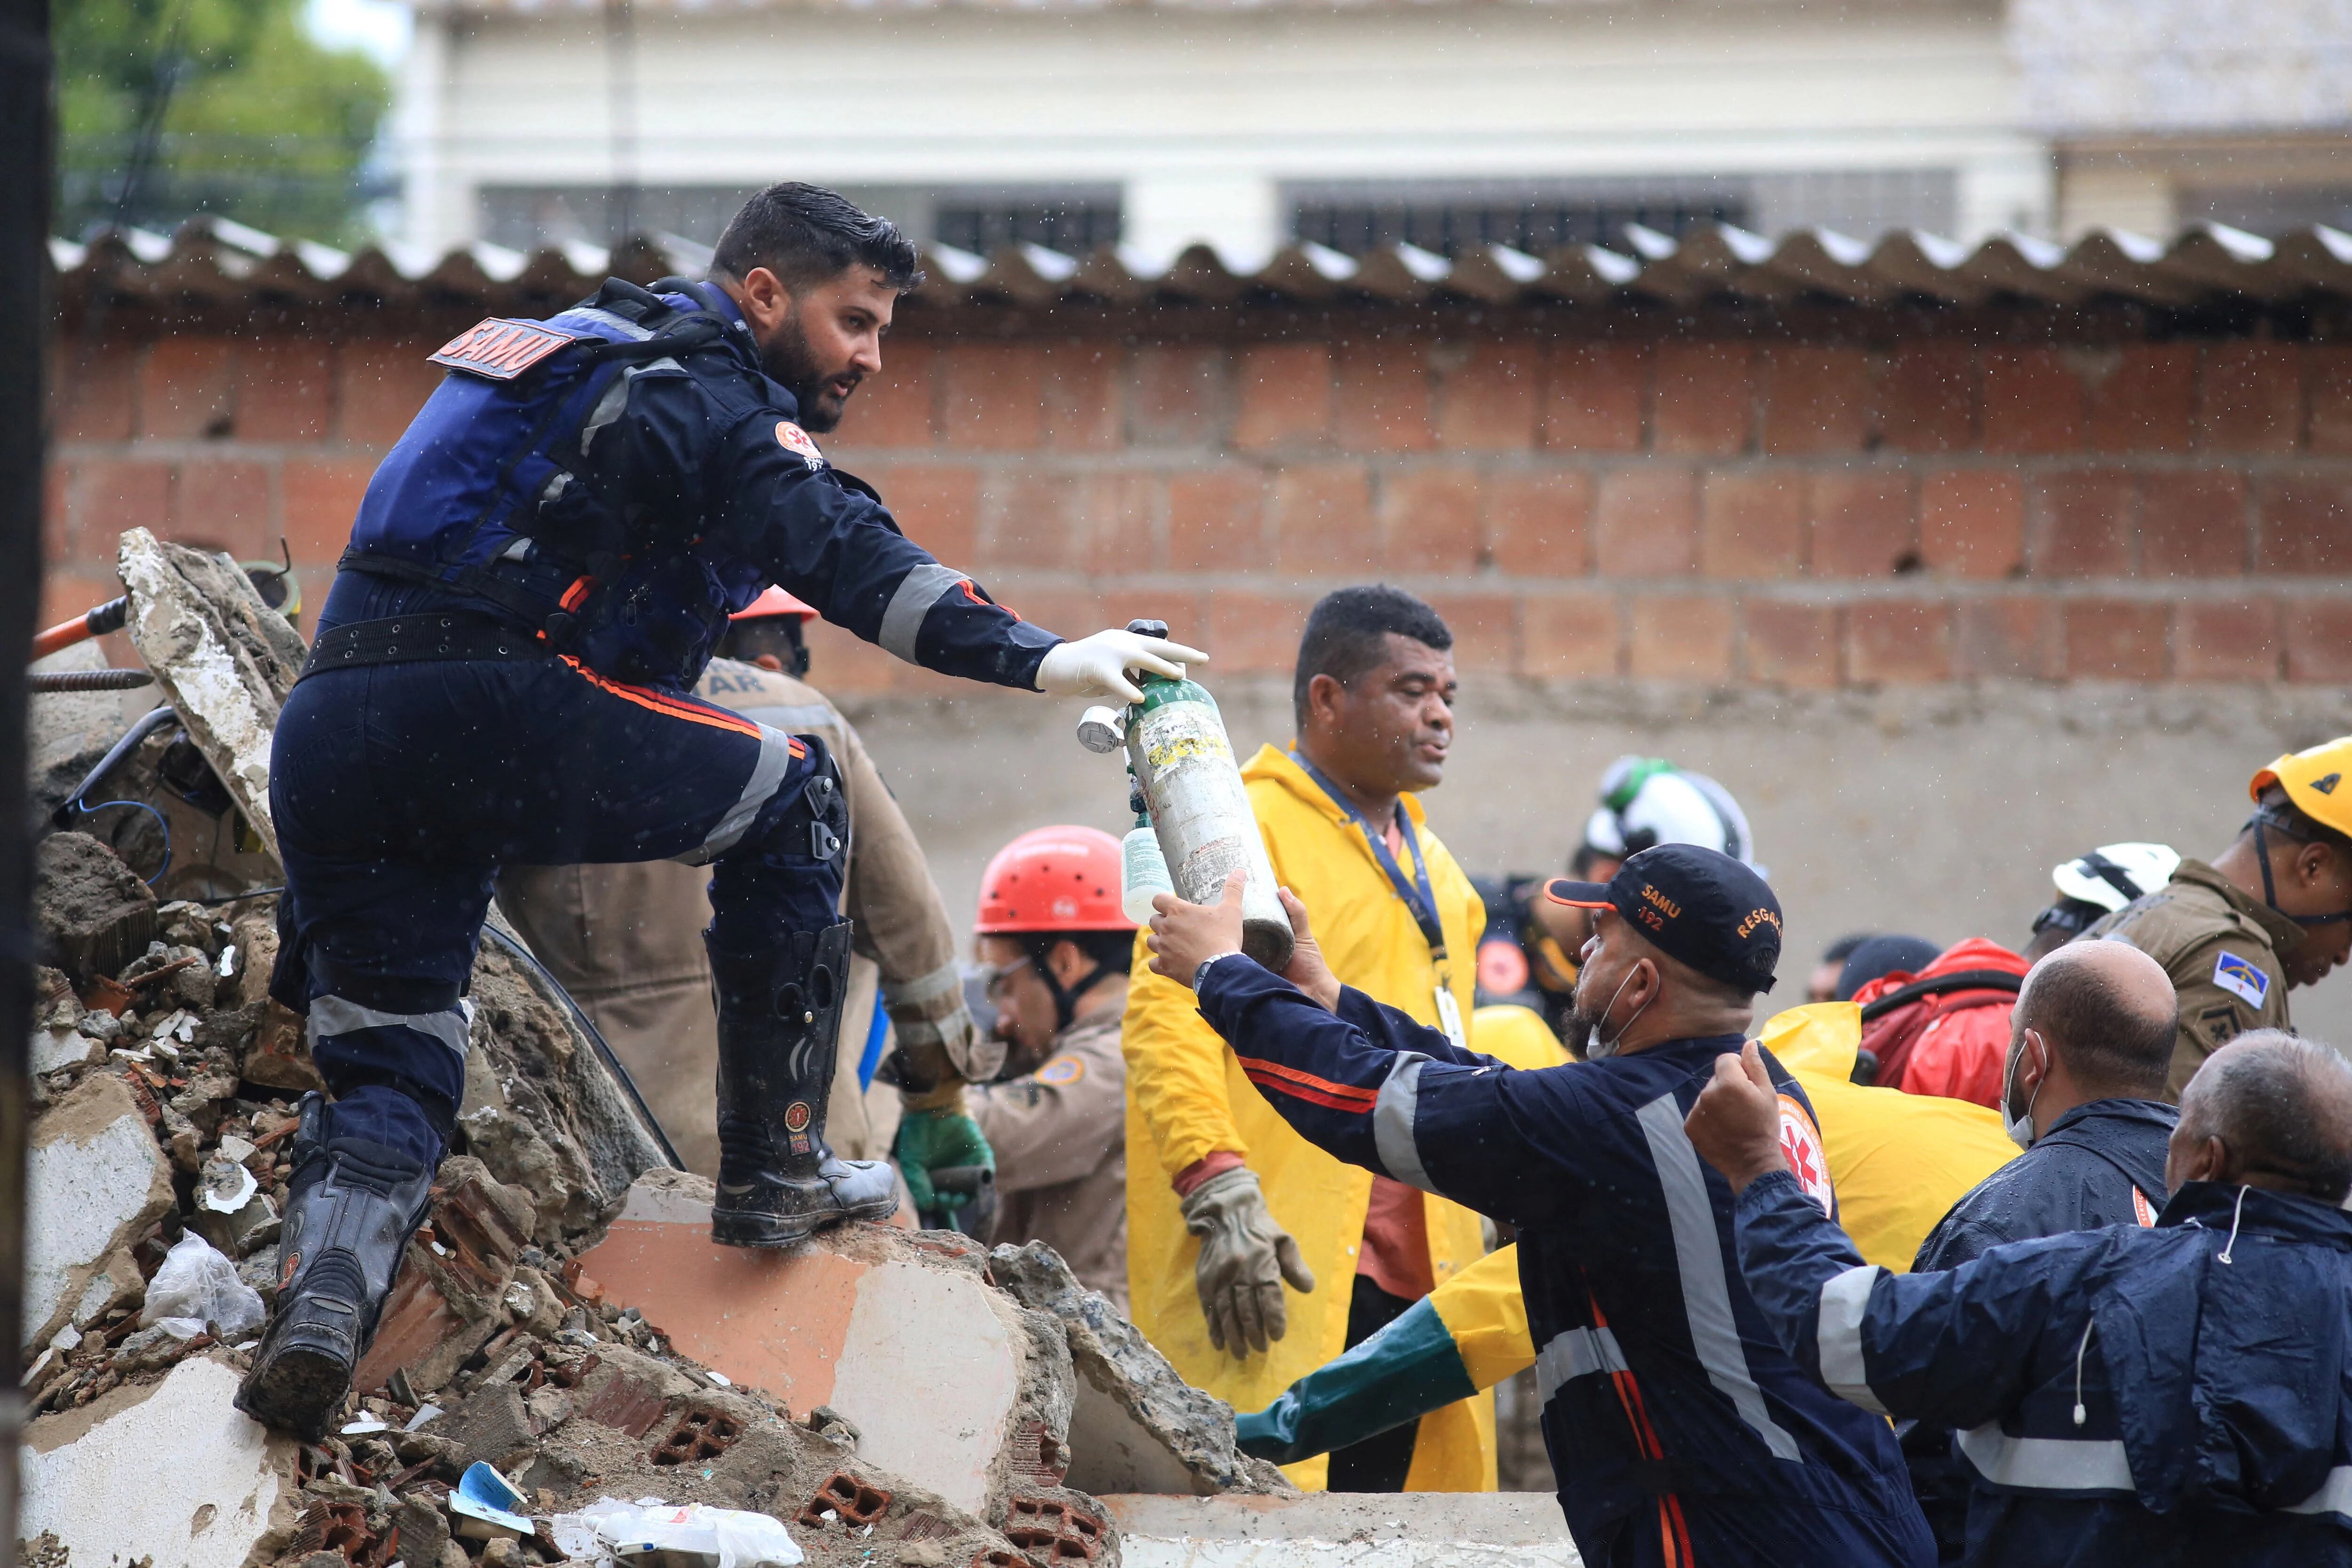 Las labores de rescate continúan con el apoyo de perros entrenados y equipos de remoción de escombros (REUTERS/Anderson Stevens)